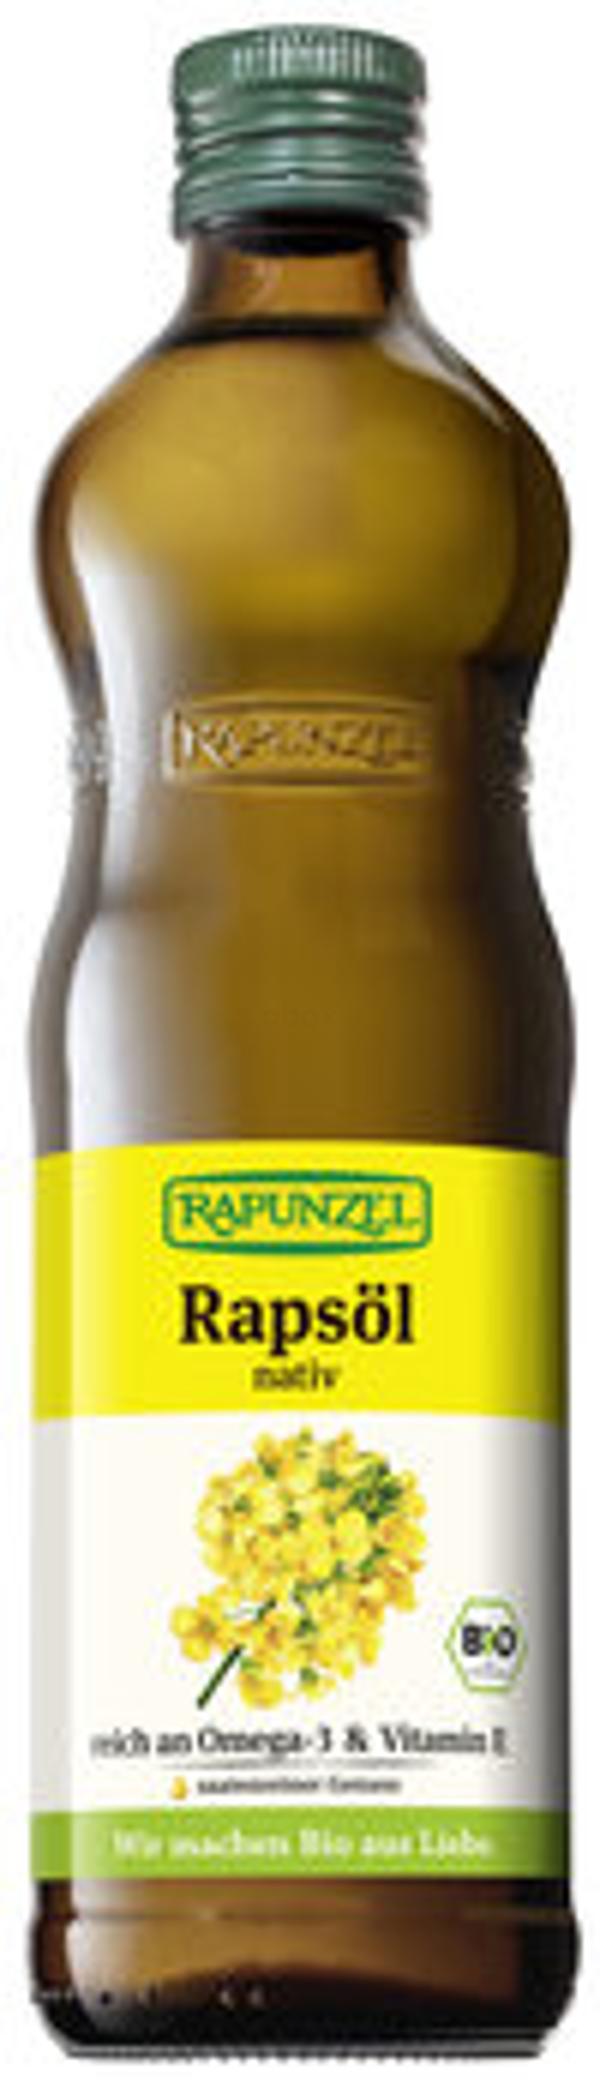 Produktfoto zu Rapsöl nativ, 500 ml